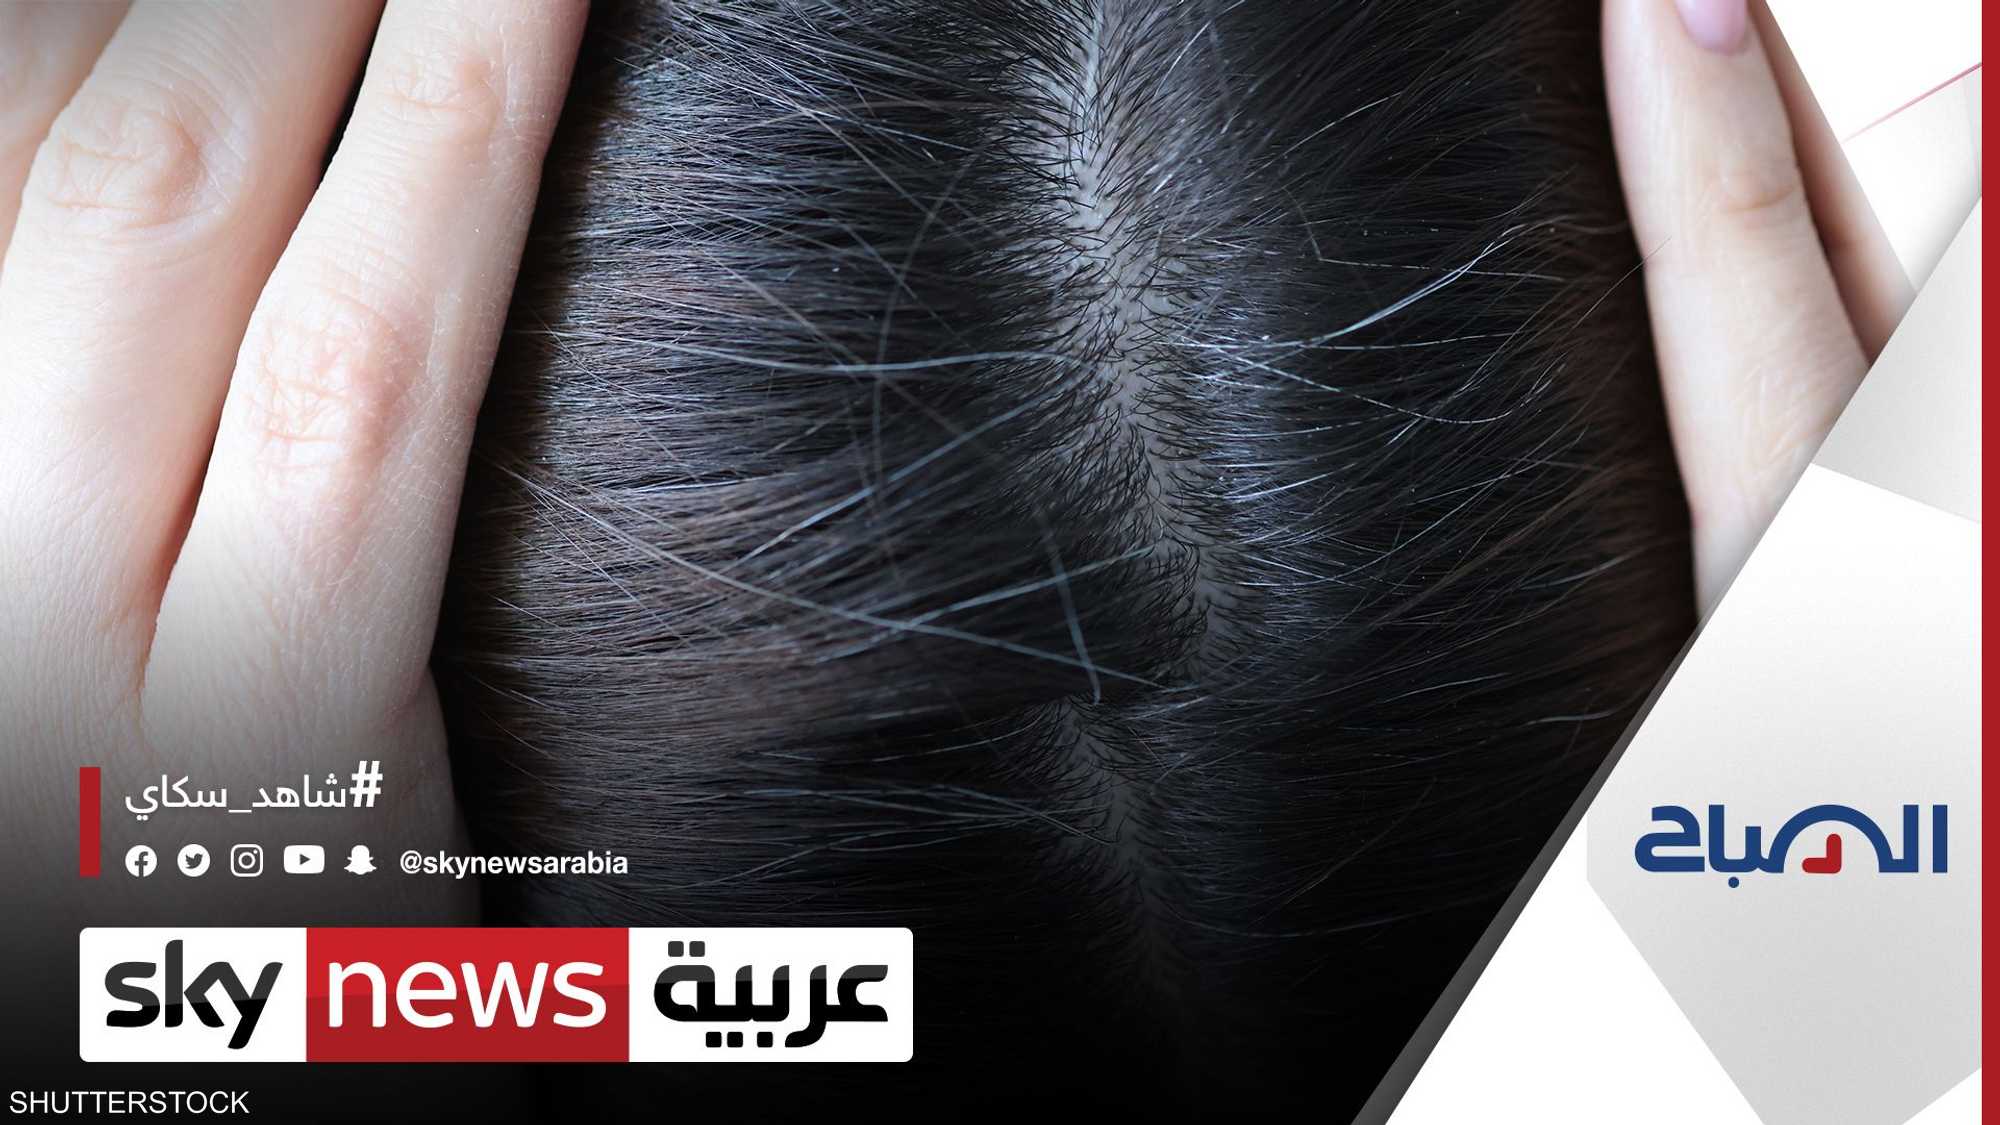 دراسة: يمكن قياس الإجهاد لدى الفرد عبر رصد حالة شعره